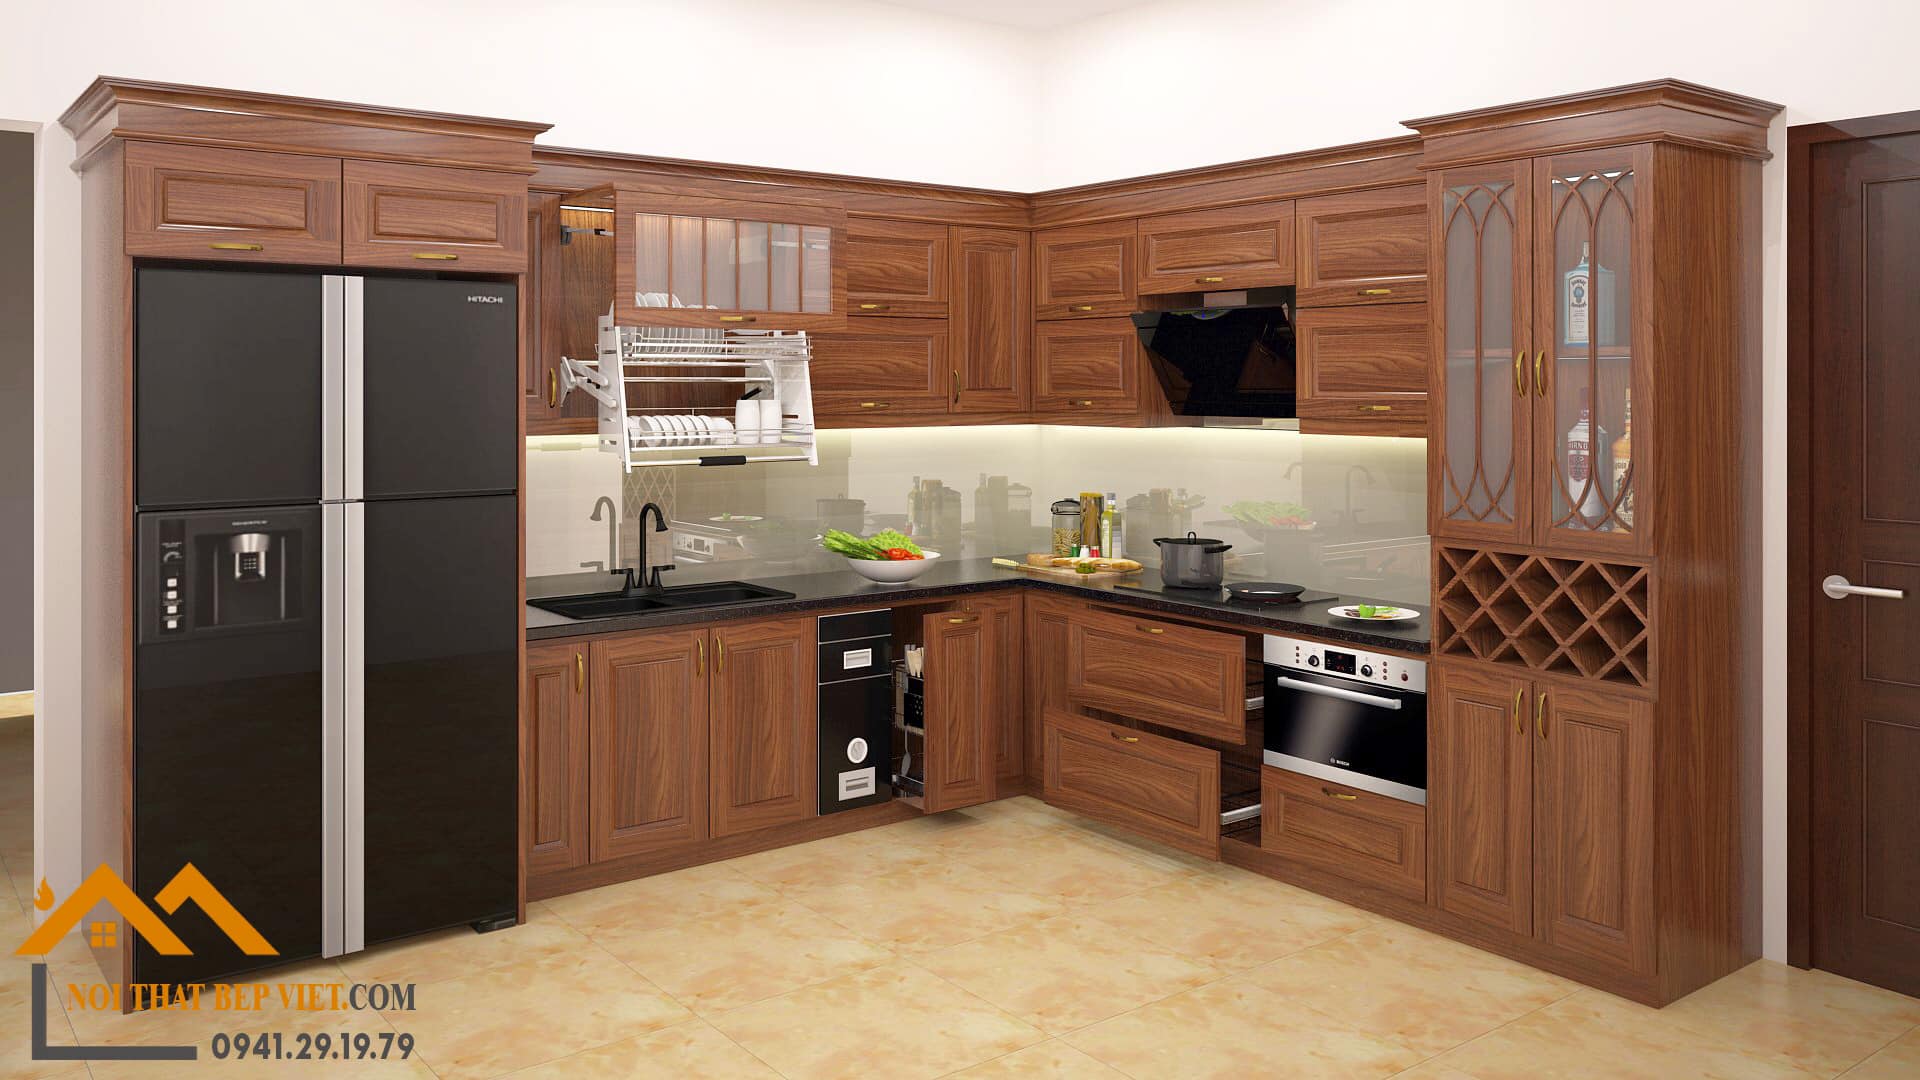 Tủ bếp gỗ Lim với màu sắc đẹp mắt và vân gỗ độc đáo, sẽ làm bất kỳ không gian bếp nào trở nên sang trọng và ấm cúng. Với chất liệu gỗ tự nhiên và độ bền cao, tủ bếp gỗ Lim sẽ giúp gia đình bạn tận hưởng không gian bếp đáng mơ ước.